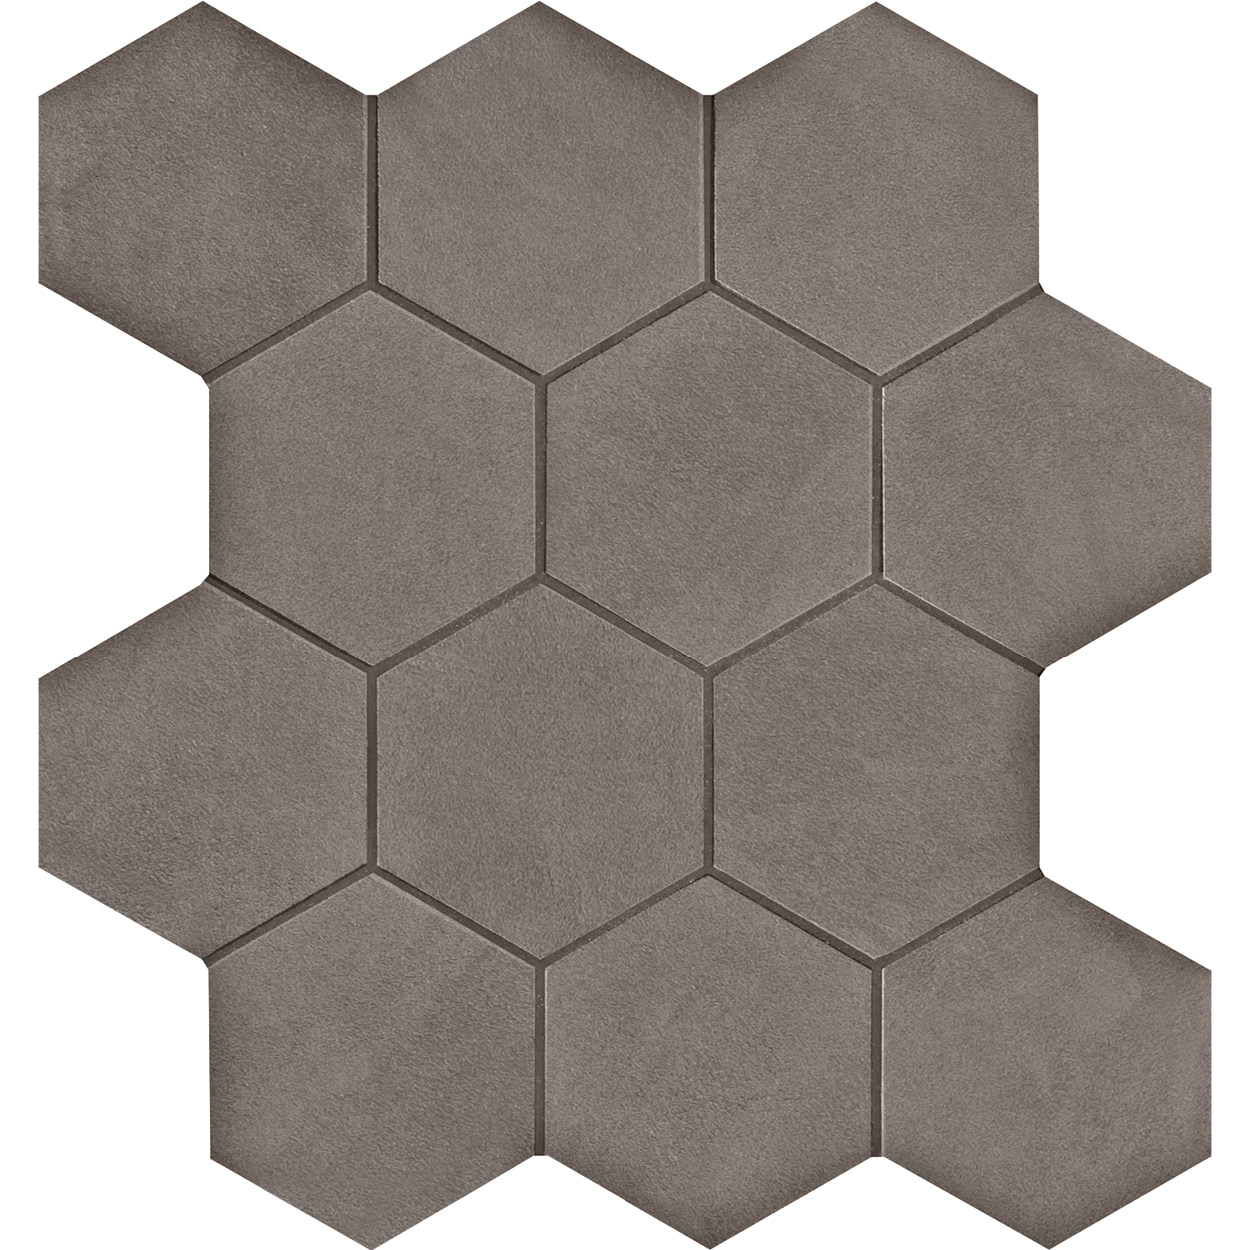 3 X 3 Seamless CL_02 hexagon